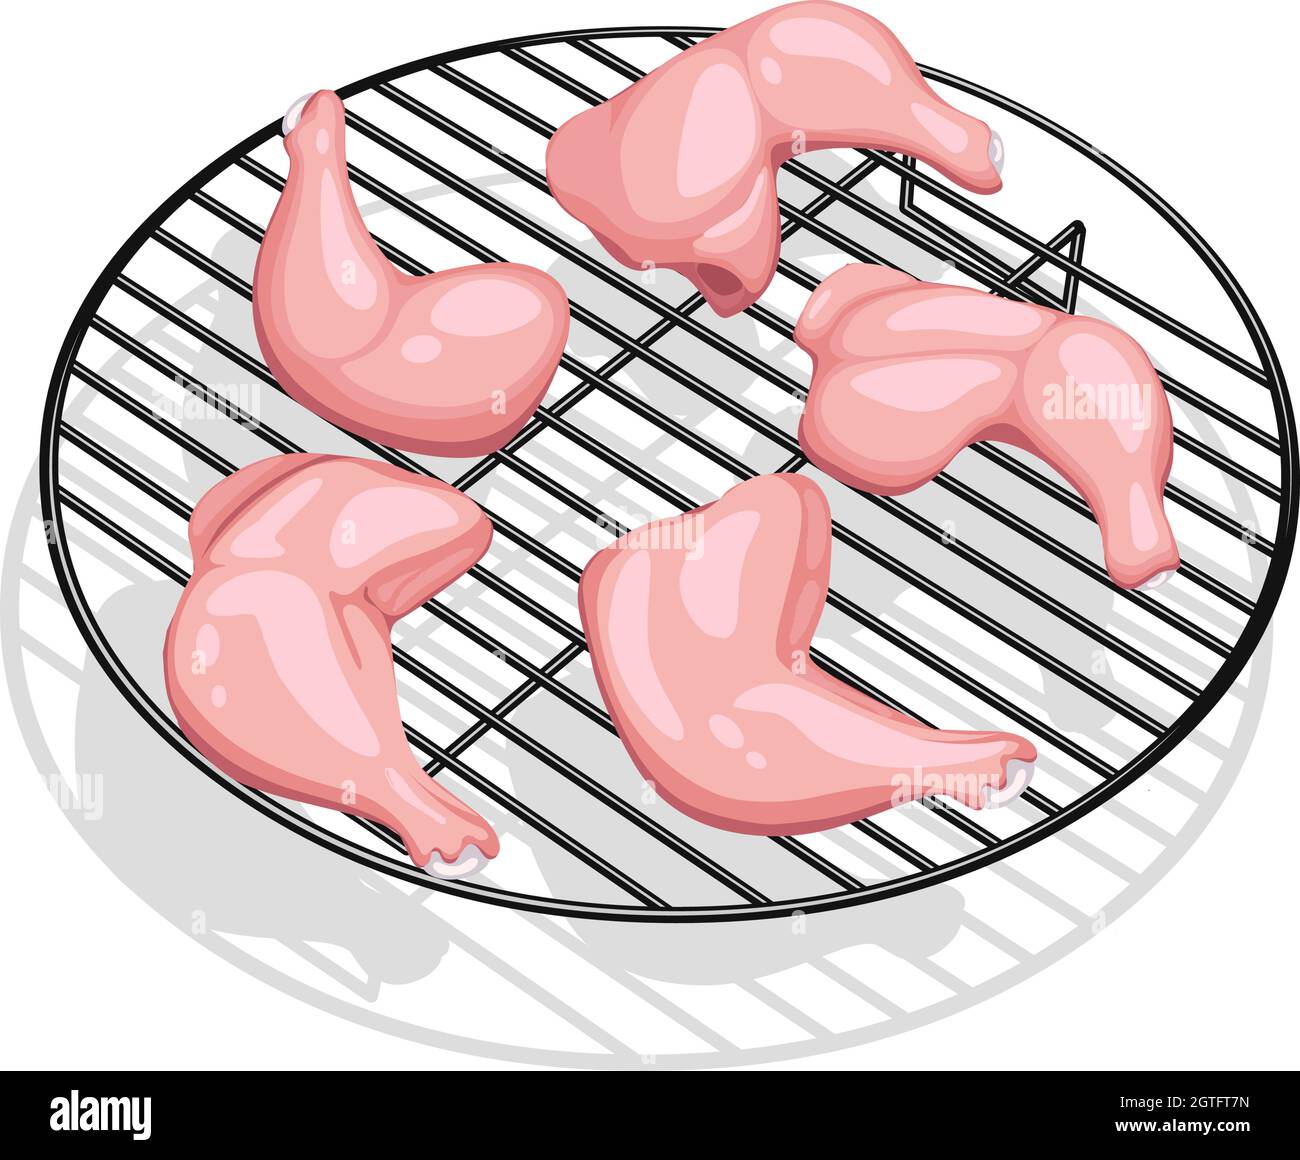 Illustrazione vettoriale della gamba intera di pollo crudo senza pelle disposta sul grill, isolata. Illustrazione Vettoriale